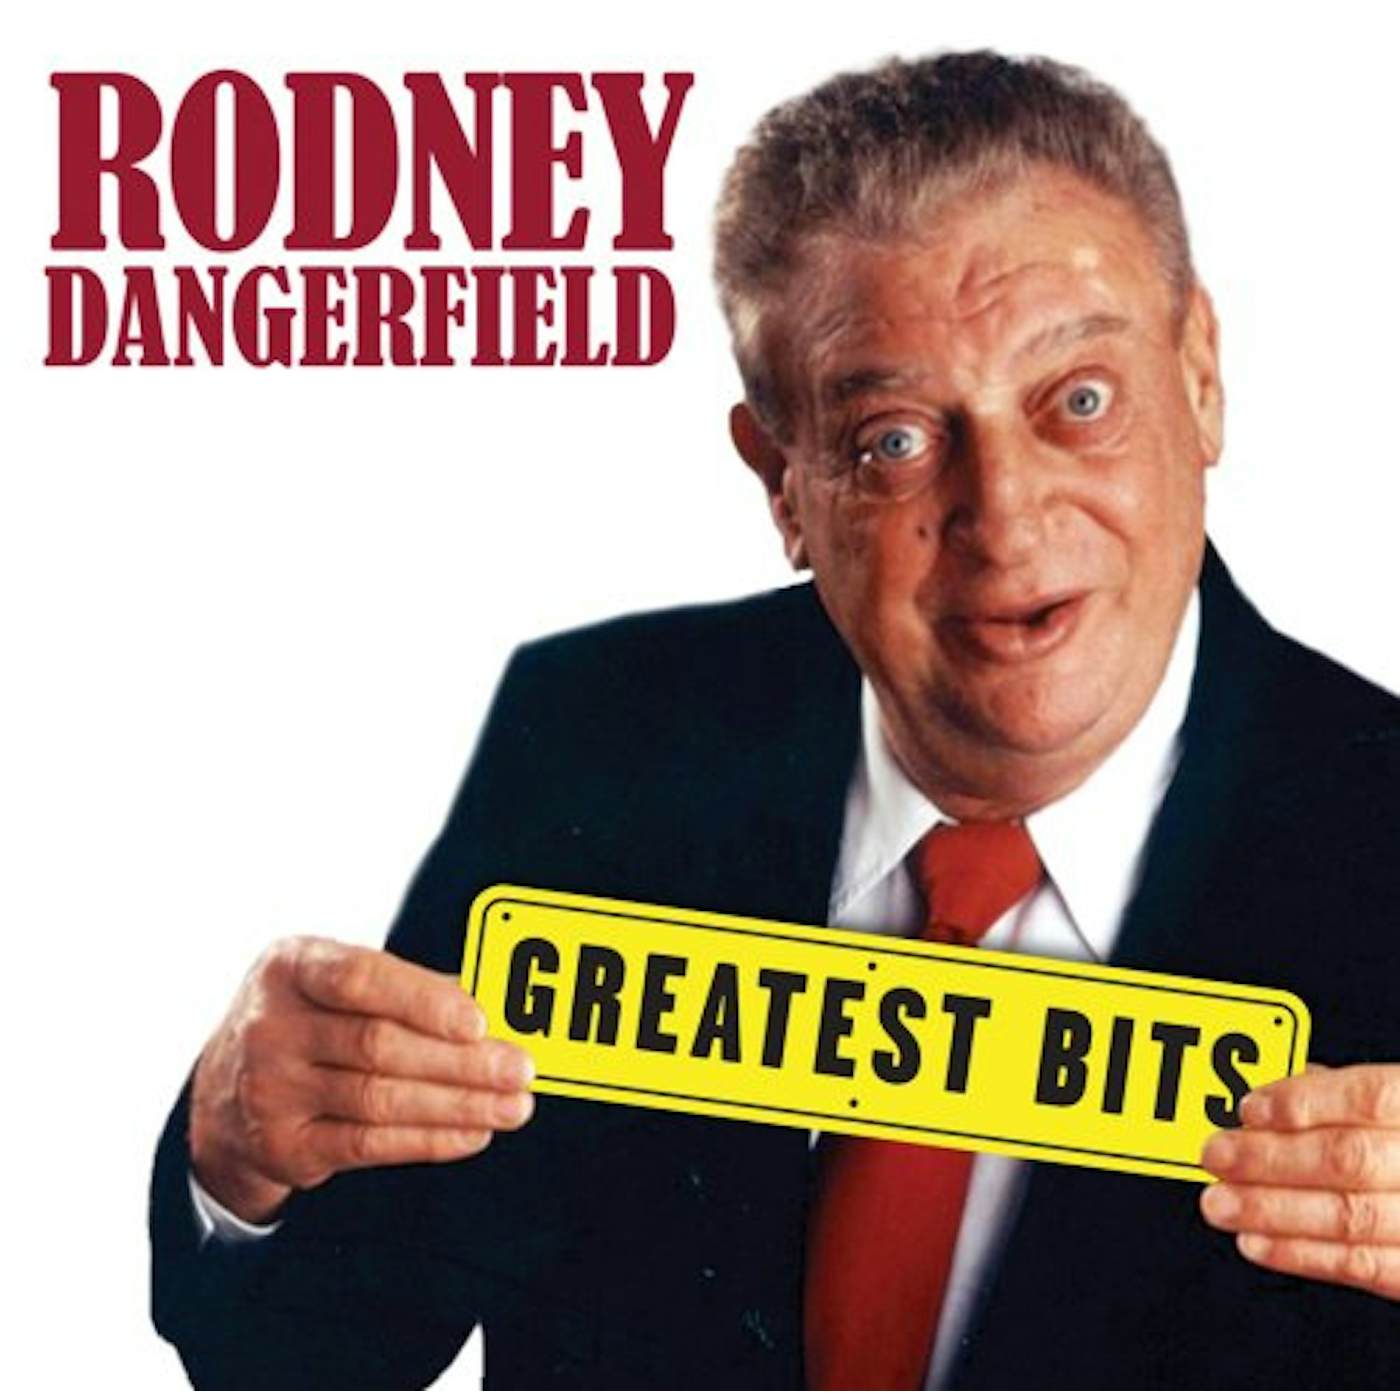 Rodney Dangerfield GREATEST BITS CD